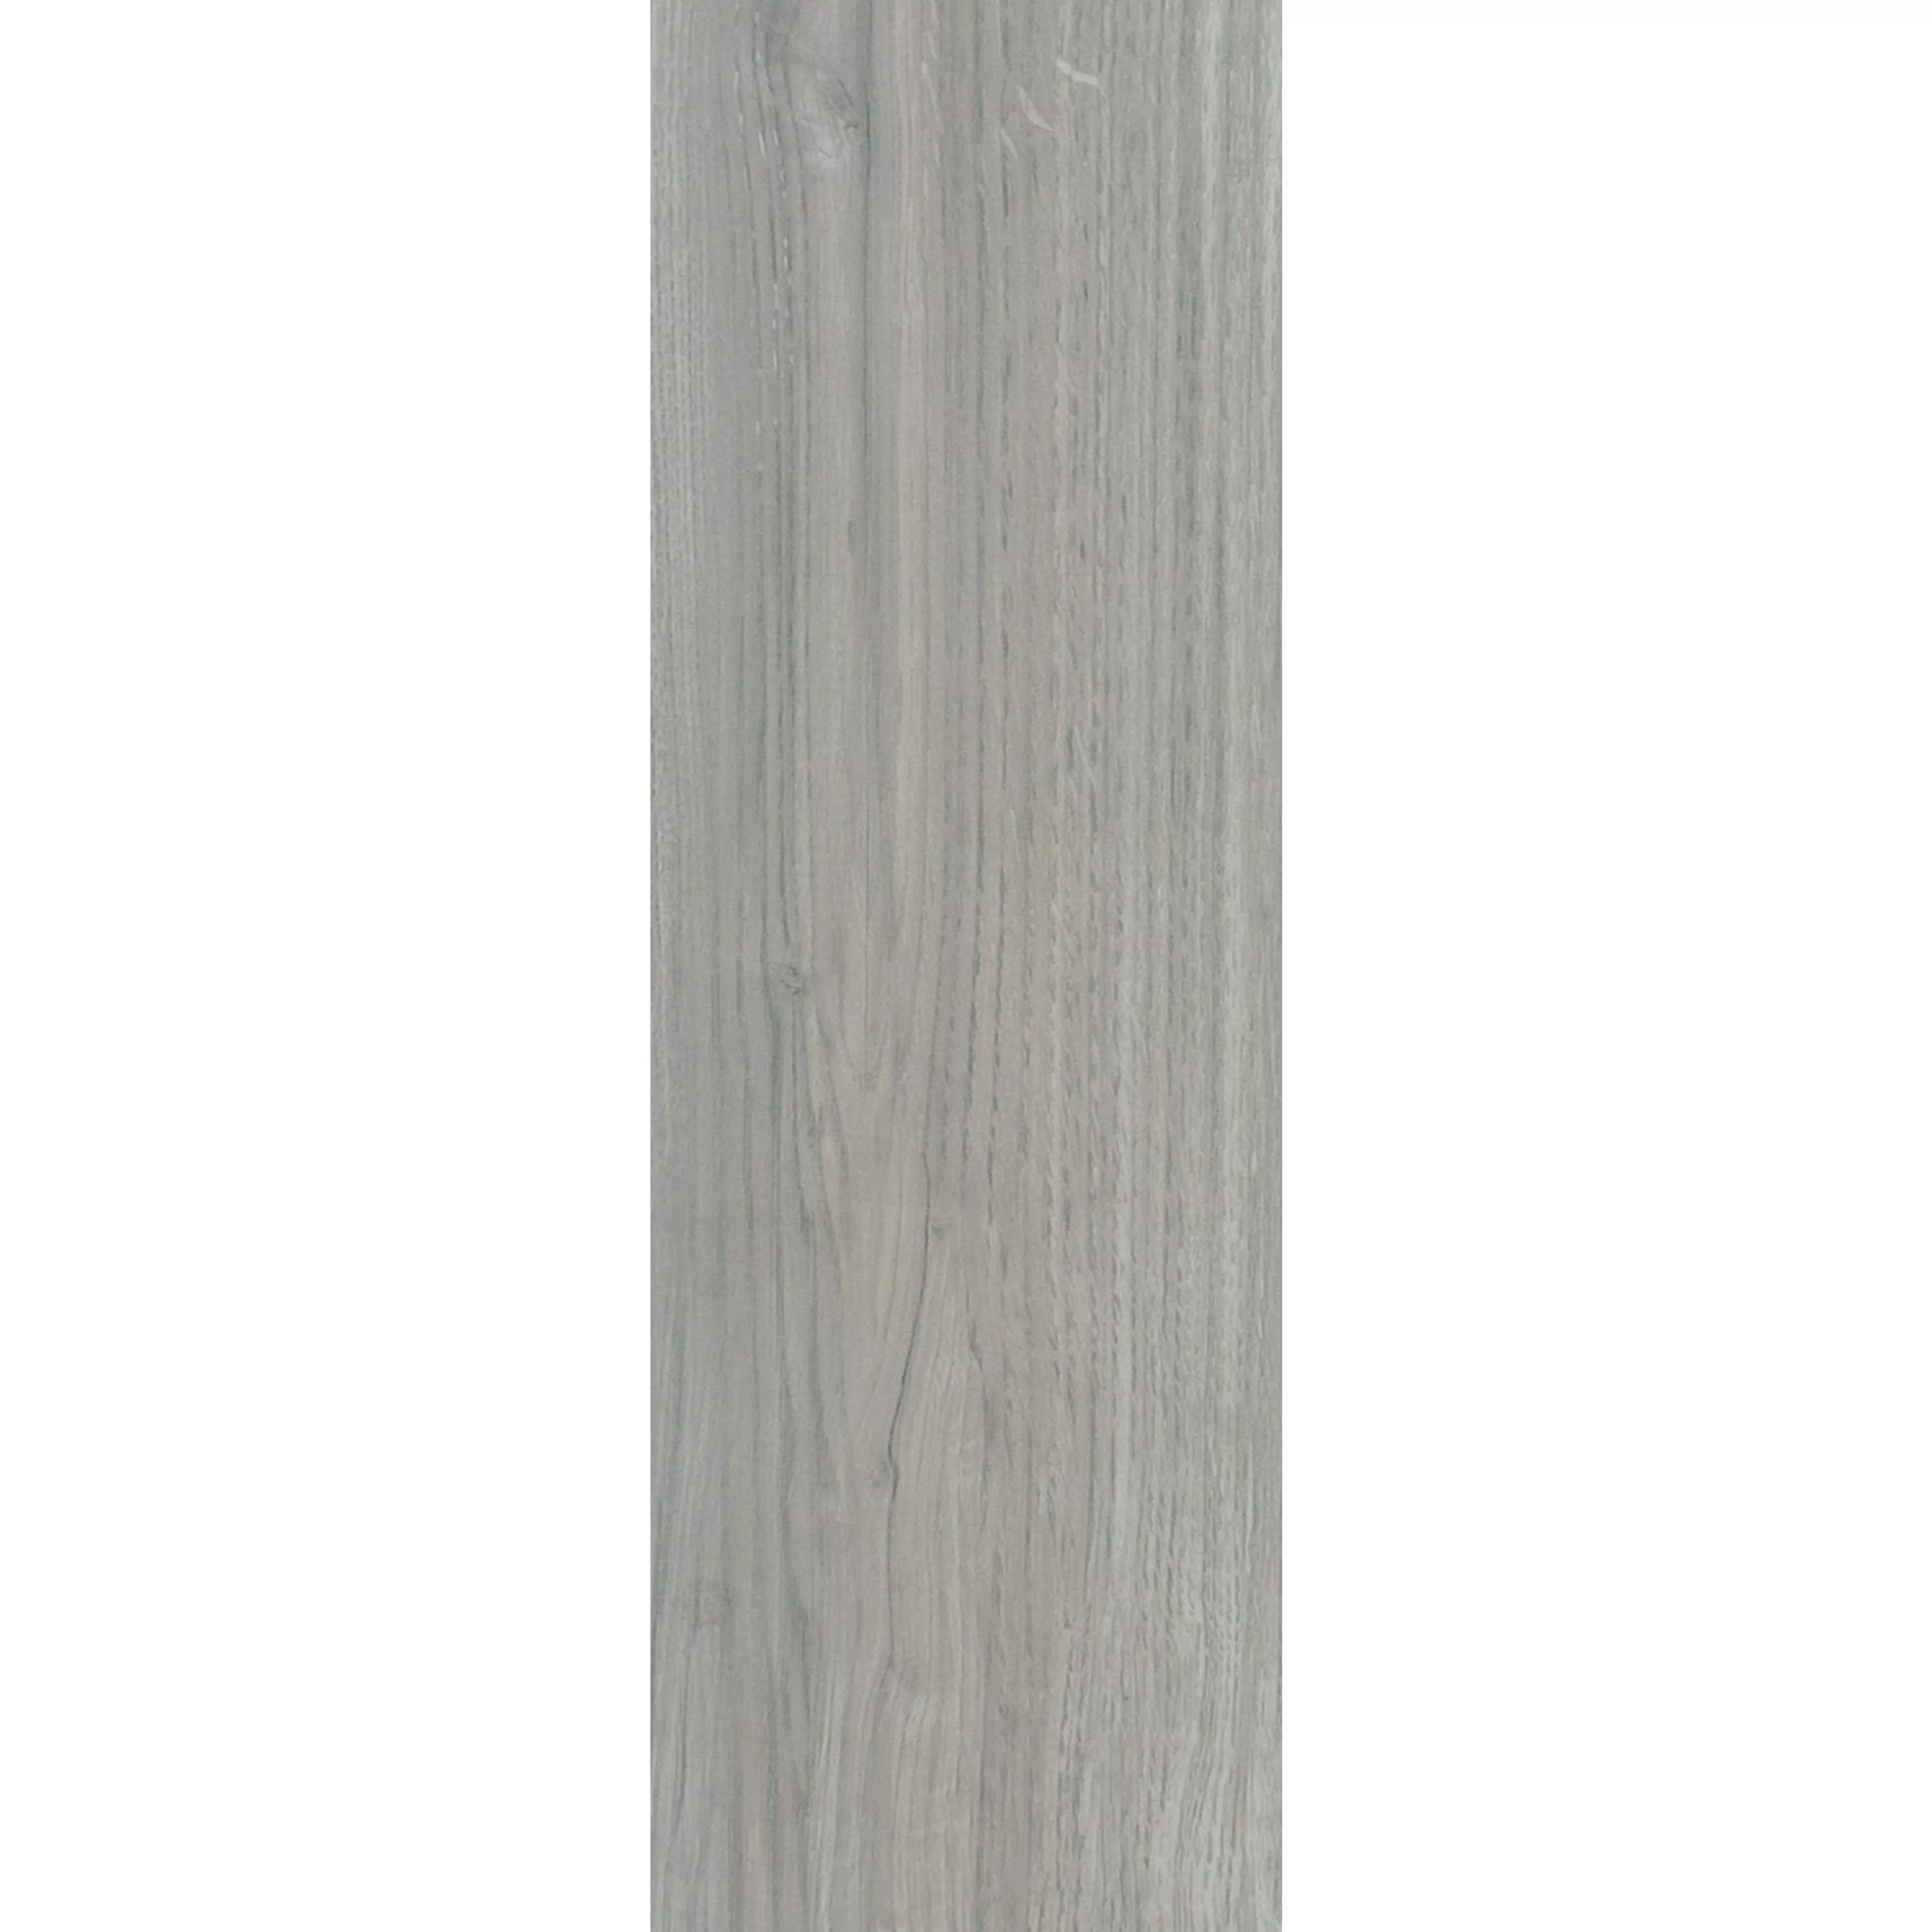 Piastrelle Legno Ottica Fullwood Beige 20x120cm 